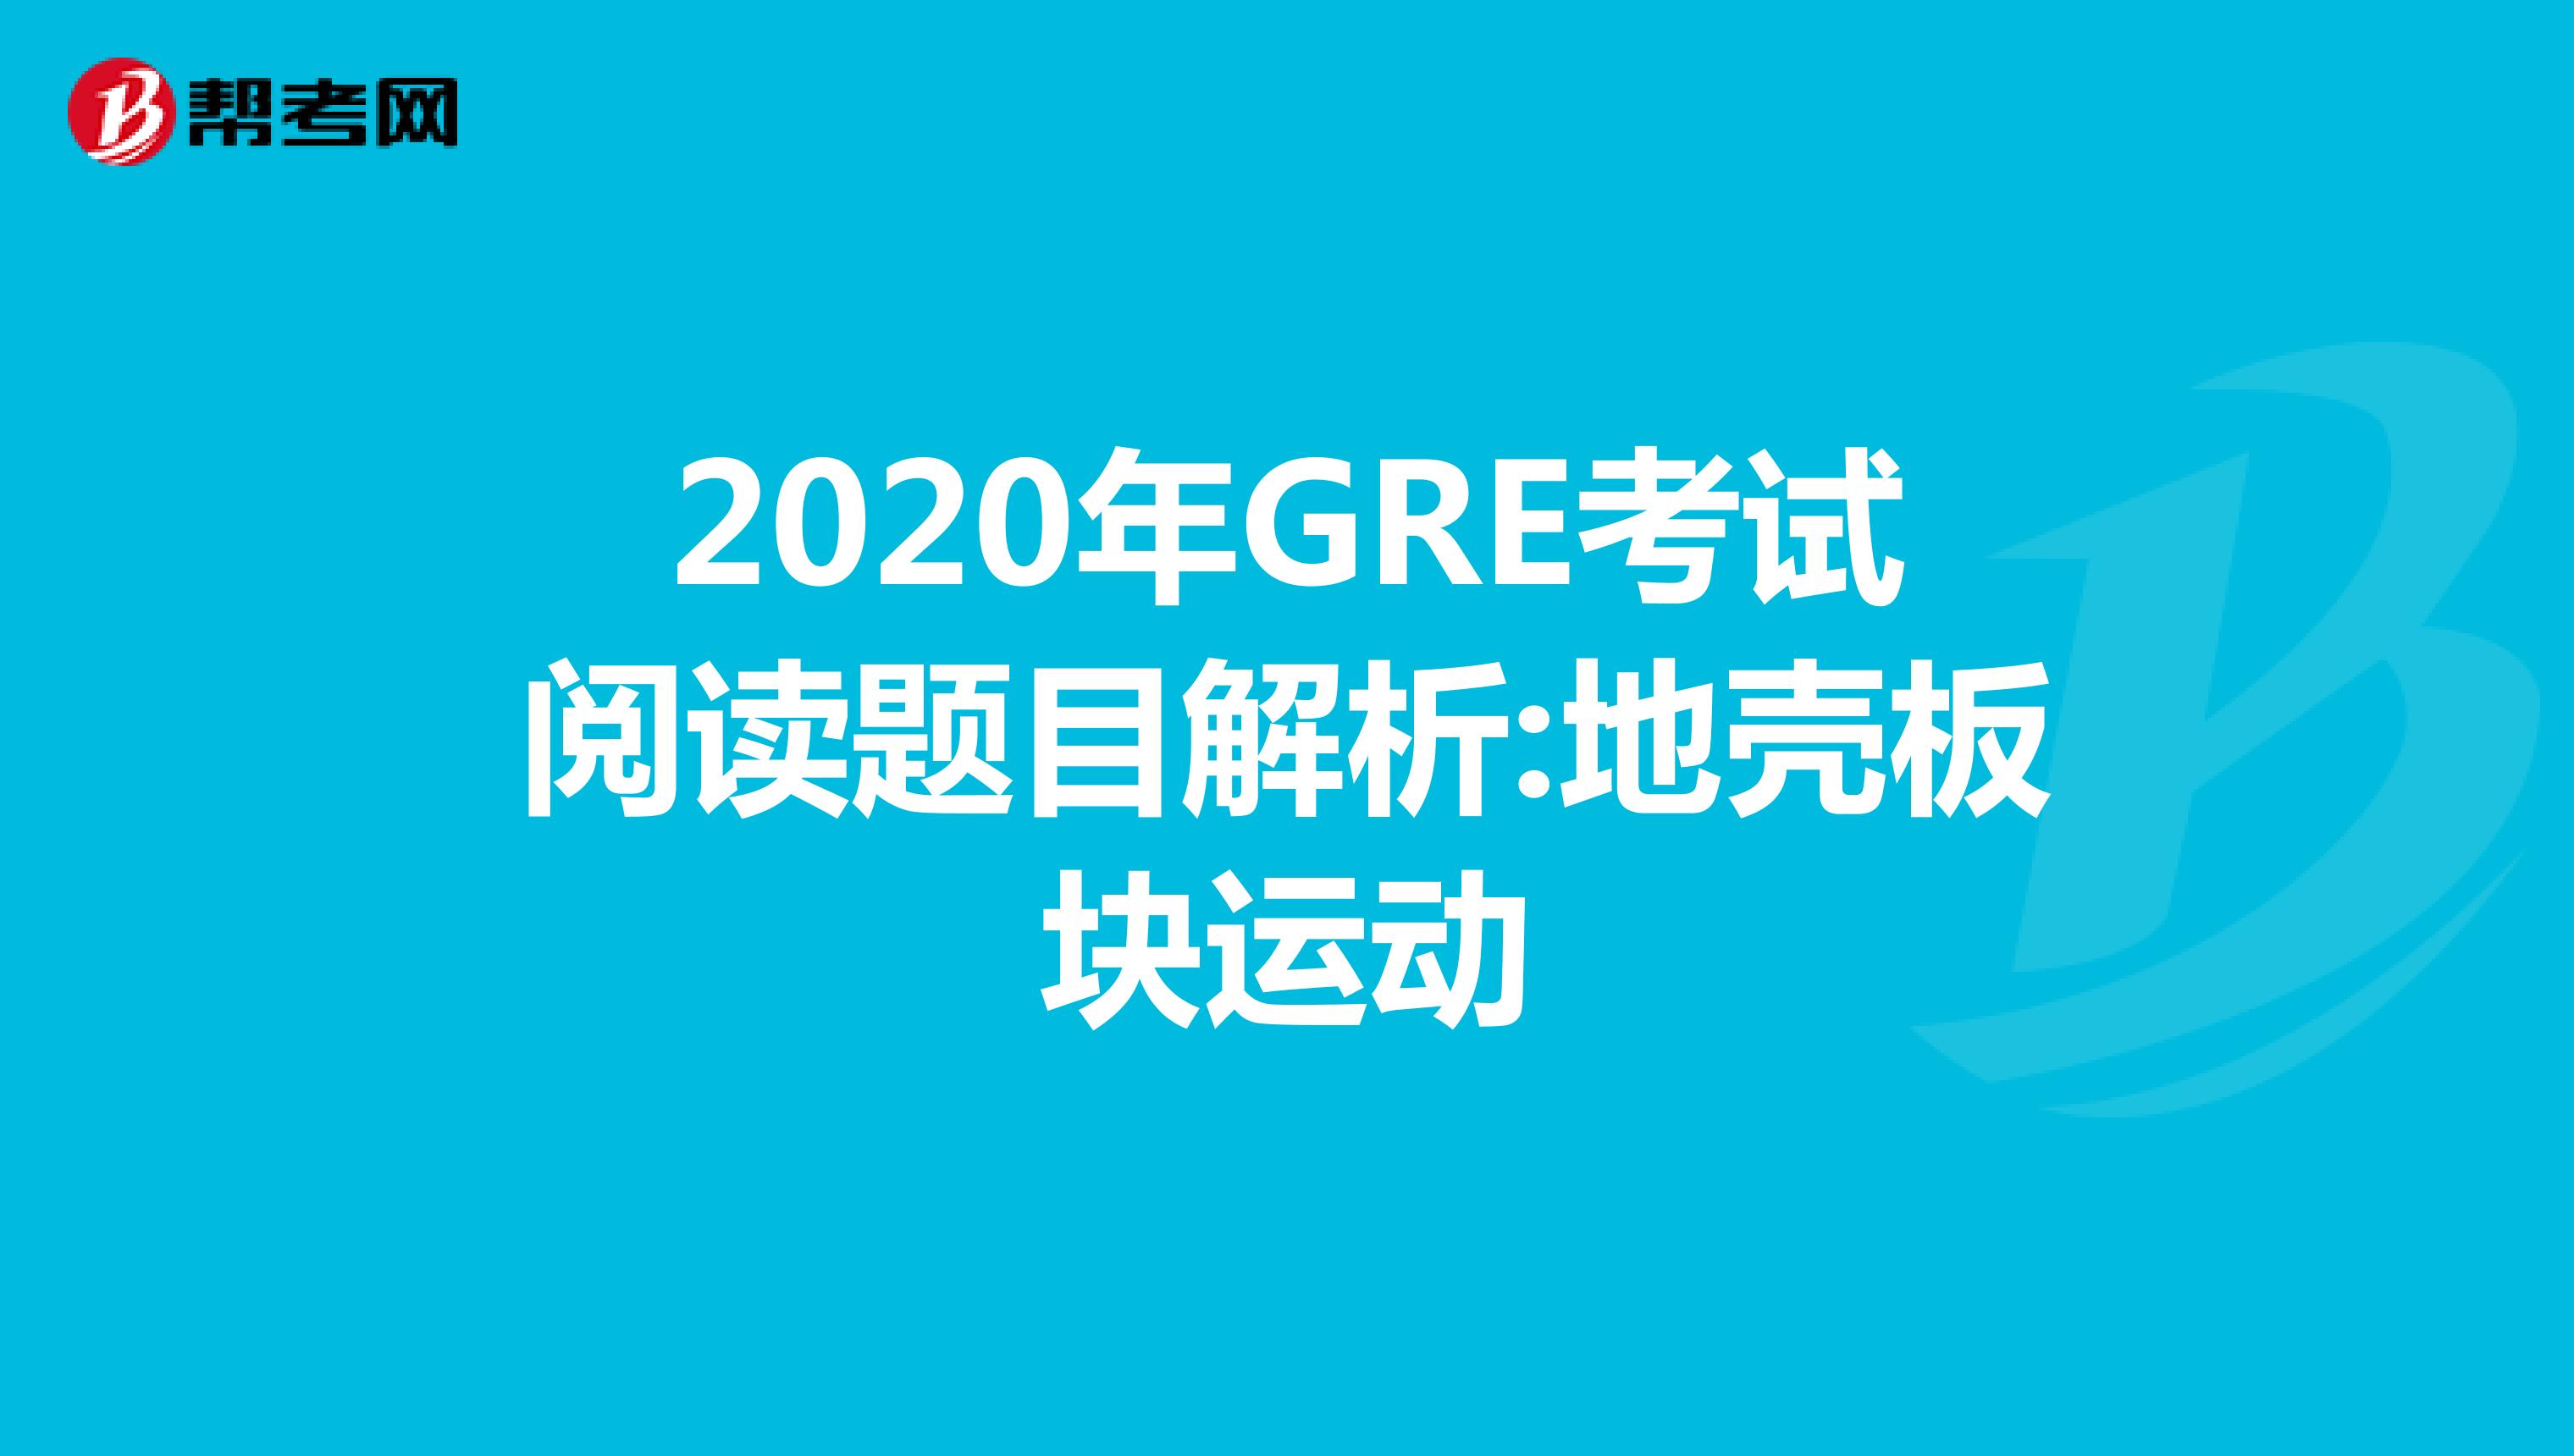 2020年GRE考试阅读题目解析:地壳板块运动